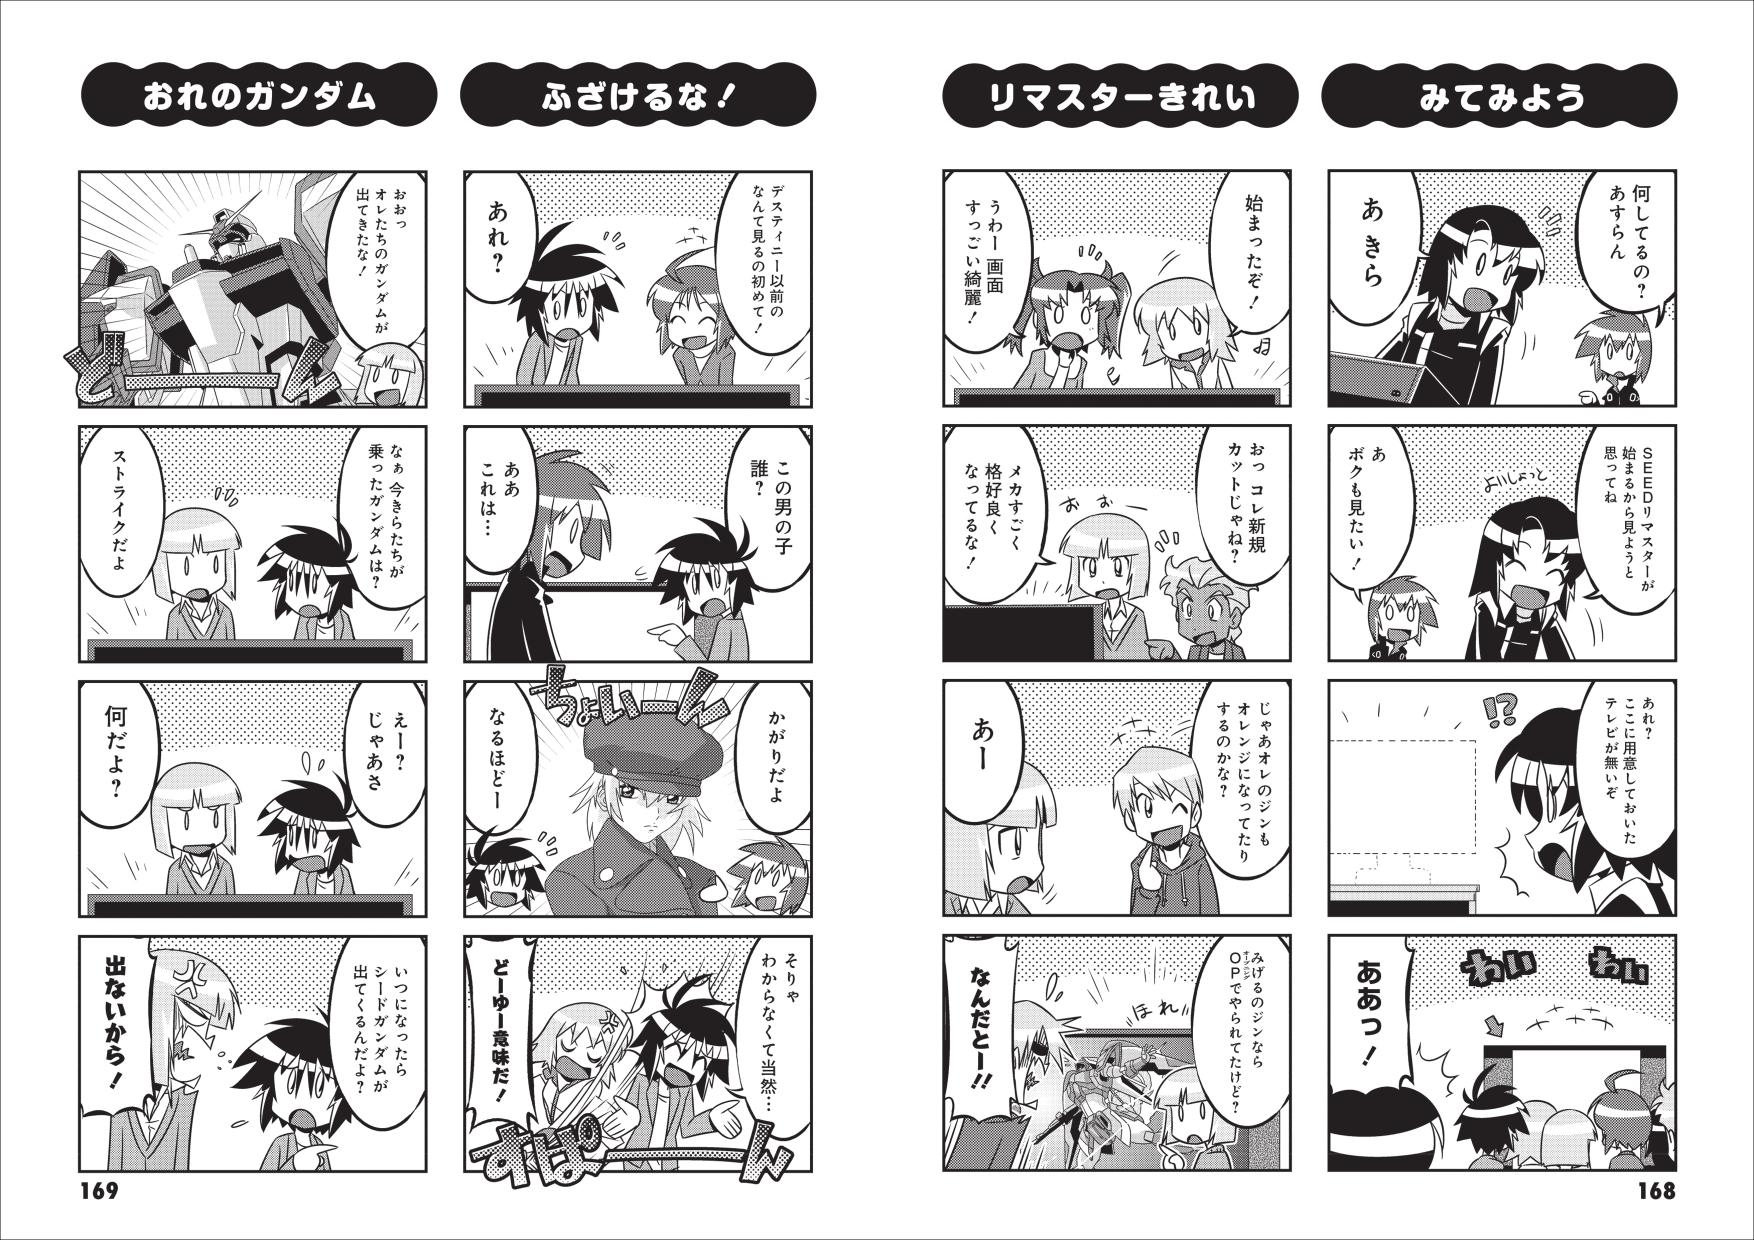 「機動戦士ガンダムSEED 」４コマ漫画が発売の画像